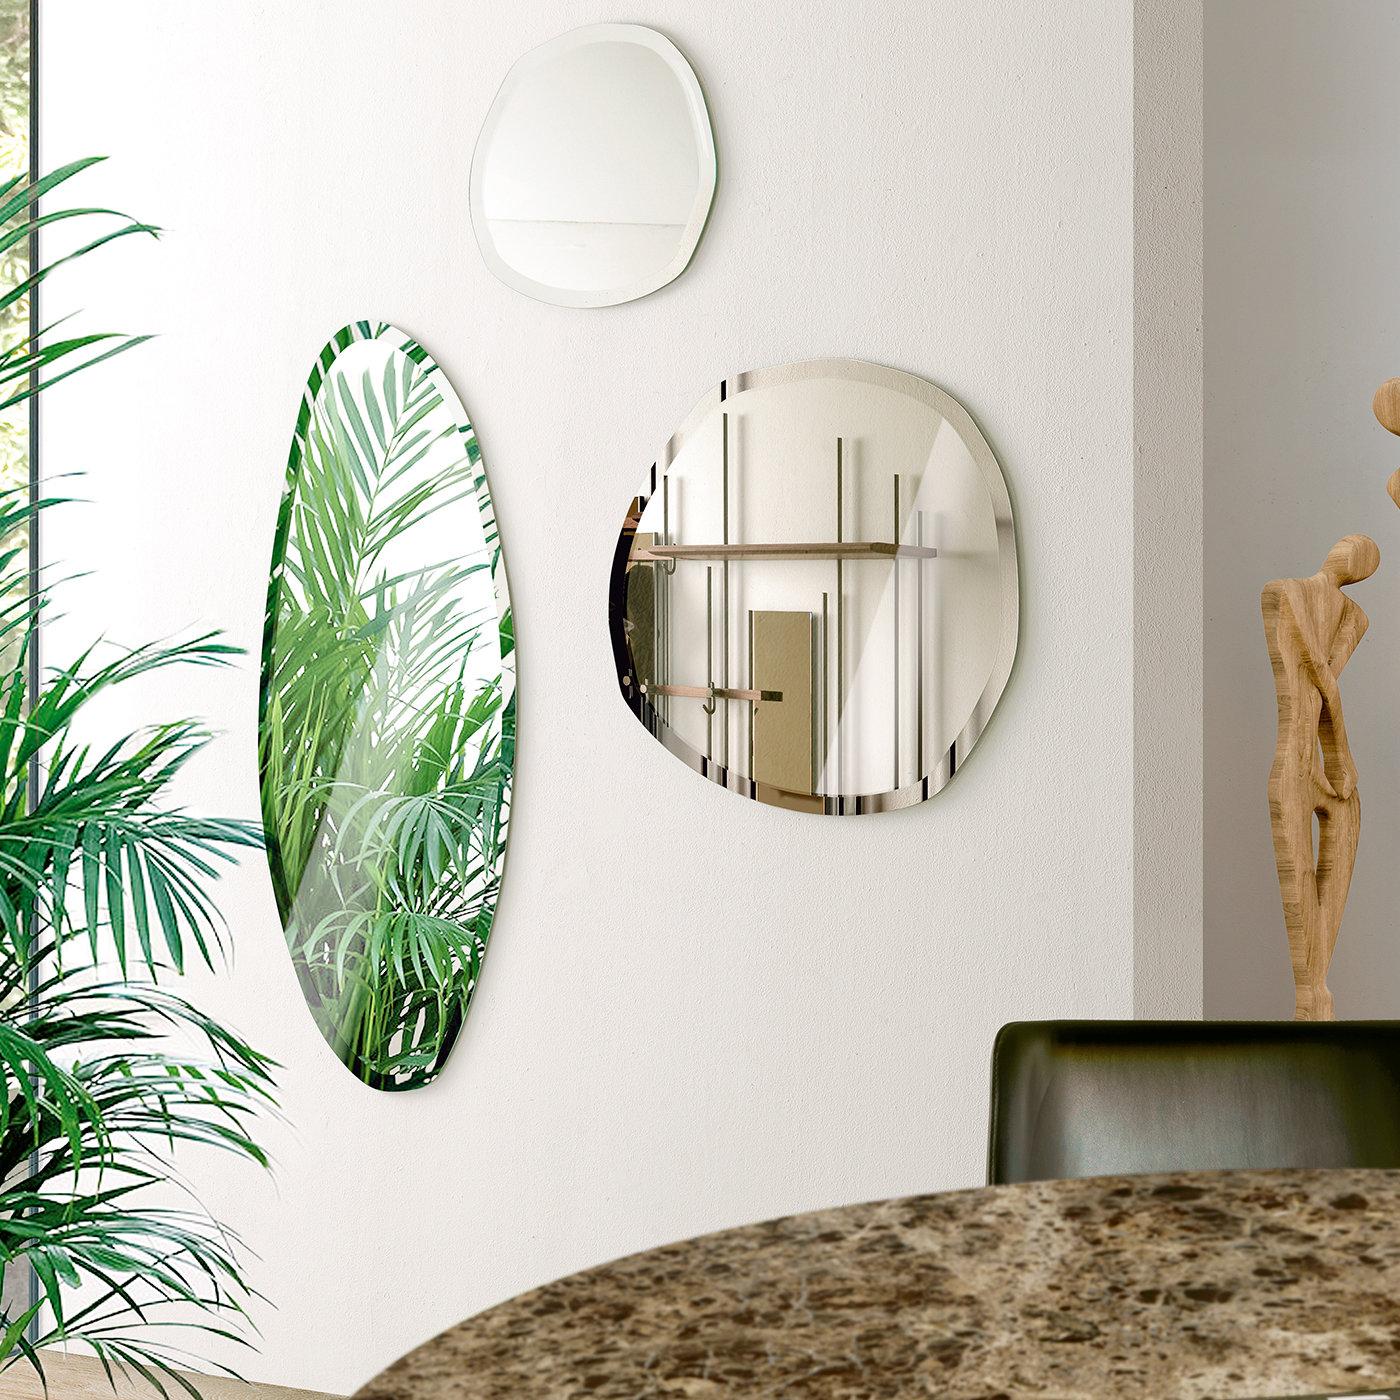 Dieser elegante, runde Wandspiegel von Norberto Delfinetti ist exzentrisch und minimalistisch. Er ist ein fesselndes, funktionales Dekorationsobjekt in einem zeitgenössischen Interieur. Der Spiegel zeichnet sich durch abgeschrägte Kanten aus, die an